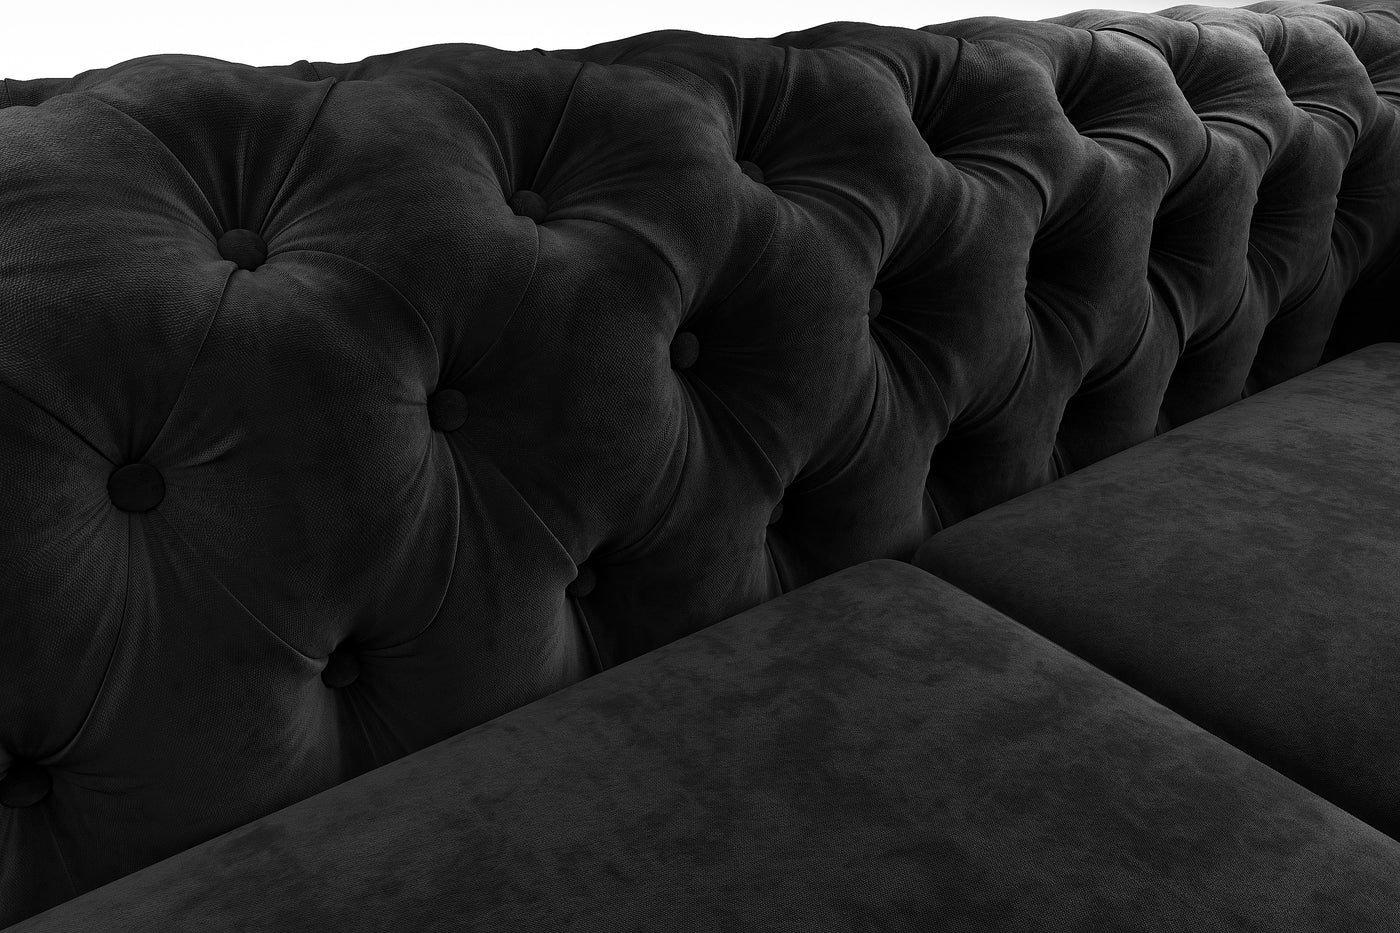 Paris 3 Seater Chesterfield Sofa (Black Velvet) (7520346341630)